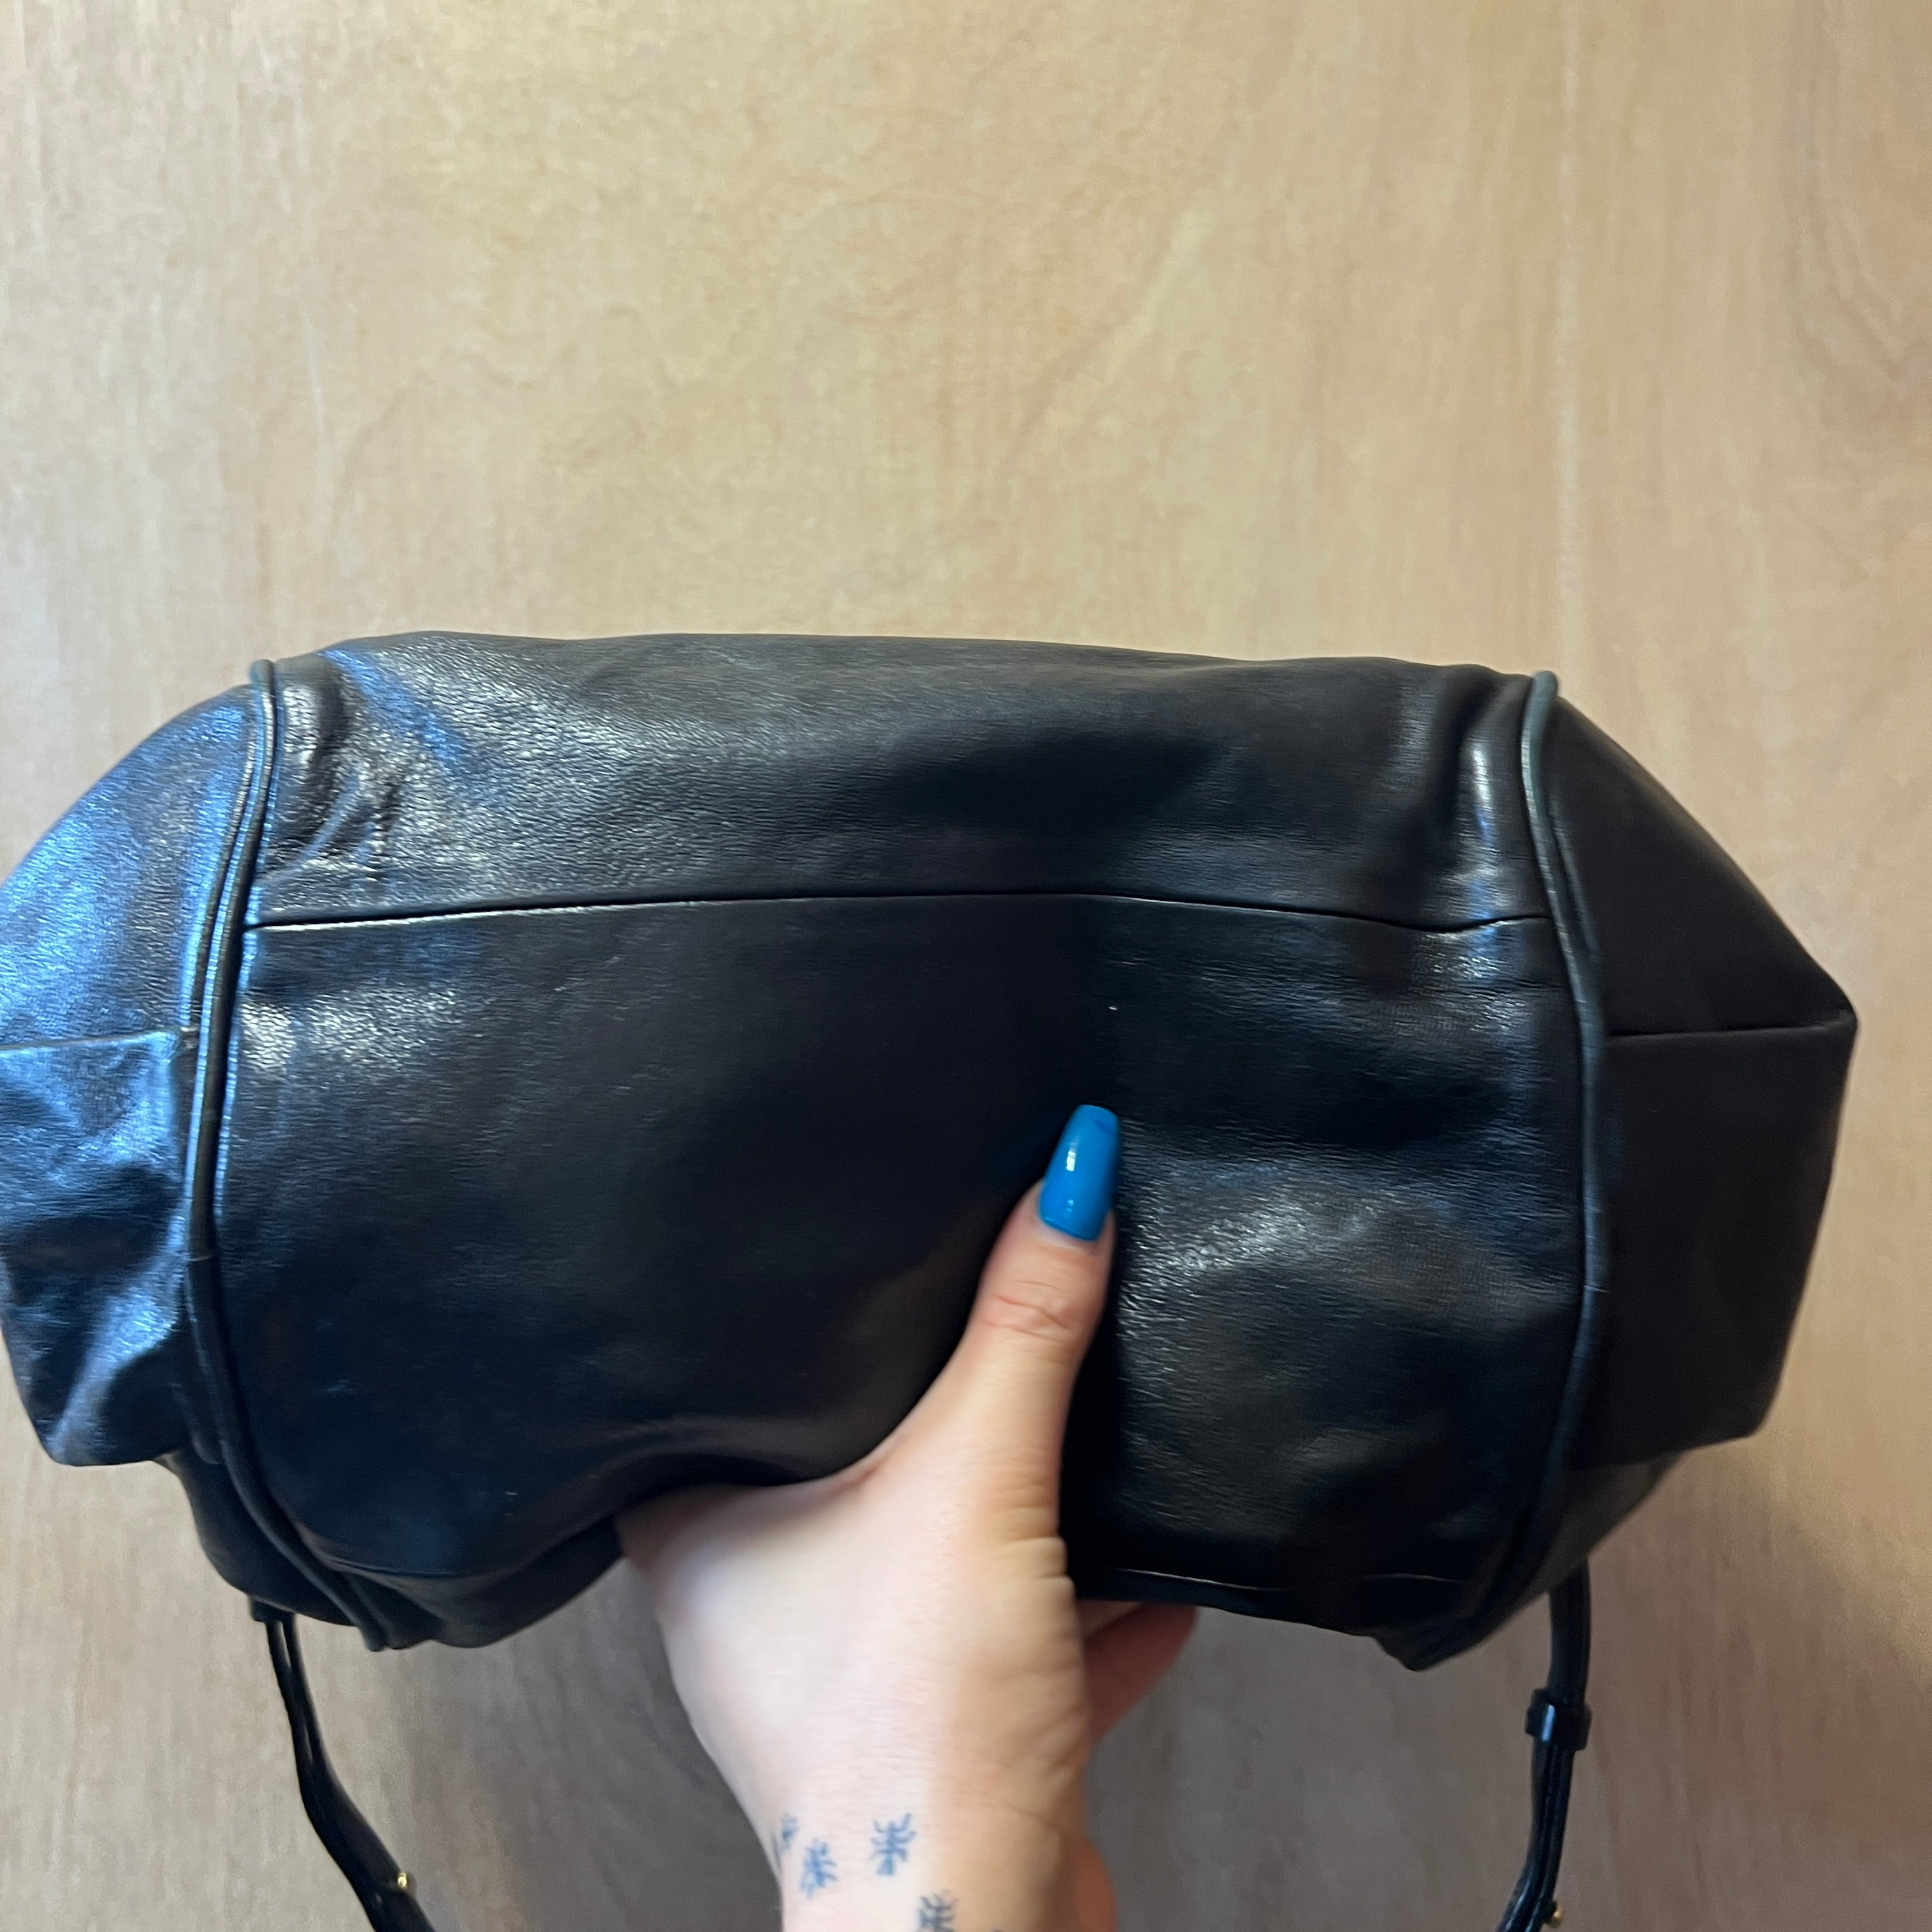 CHLOE leather handbag